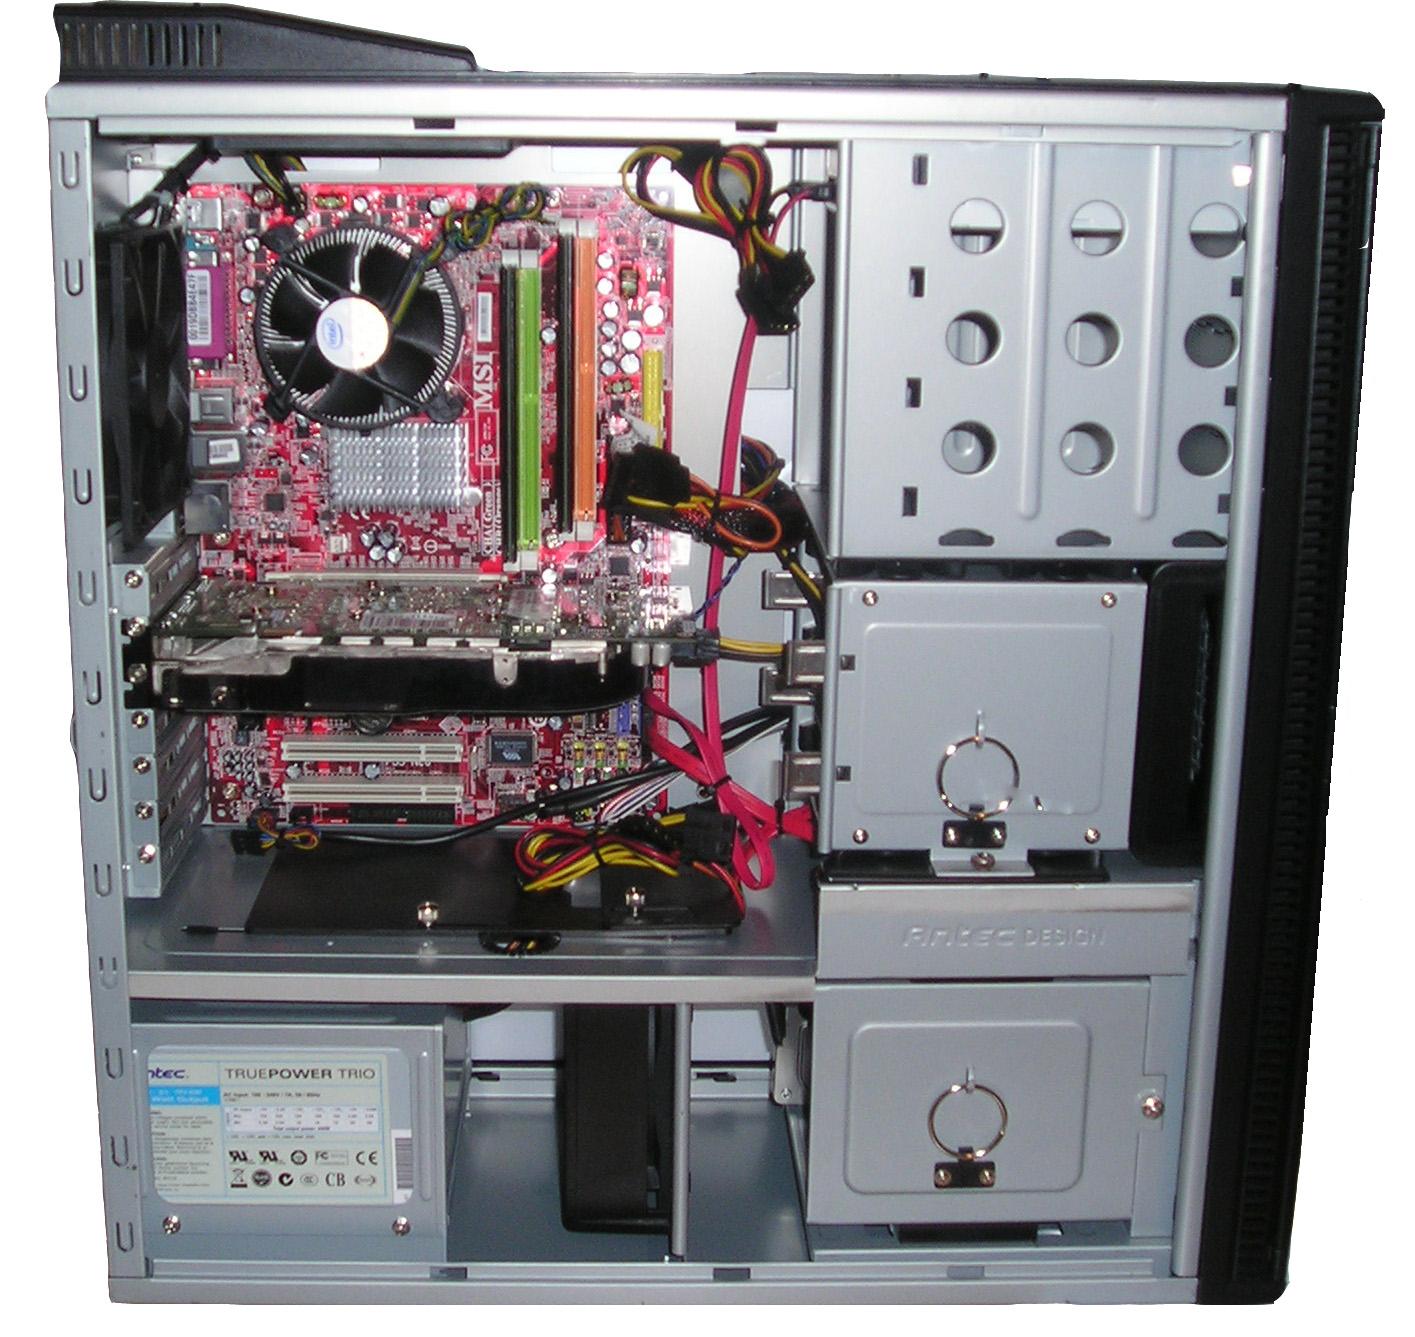 Pji1-Computer from inside.jpg